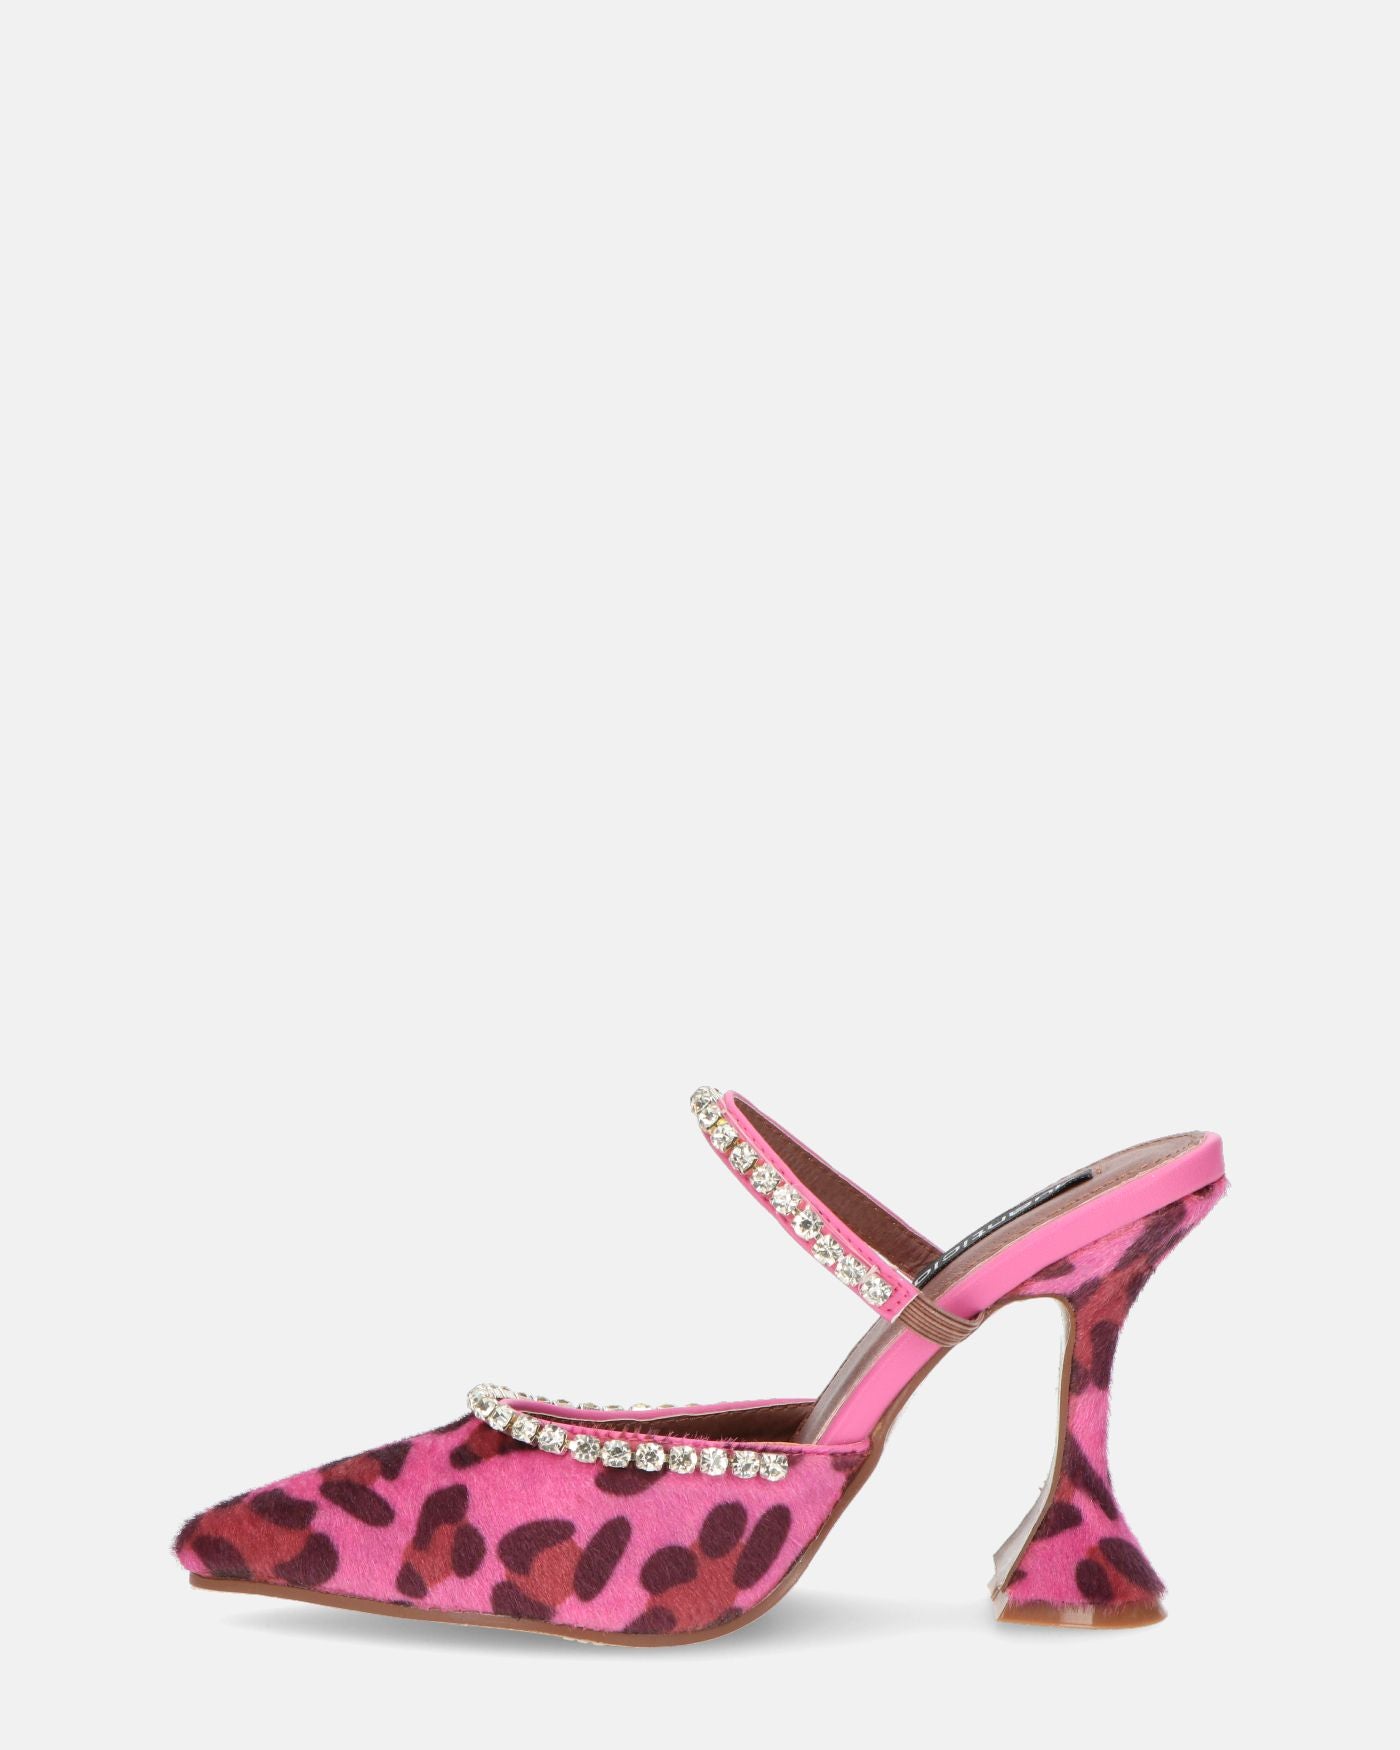 PERAL - zapato de tacón de leopardo rosa con gemas